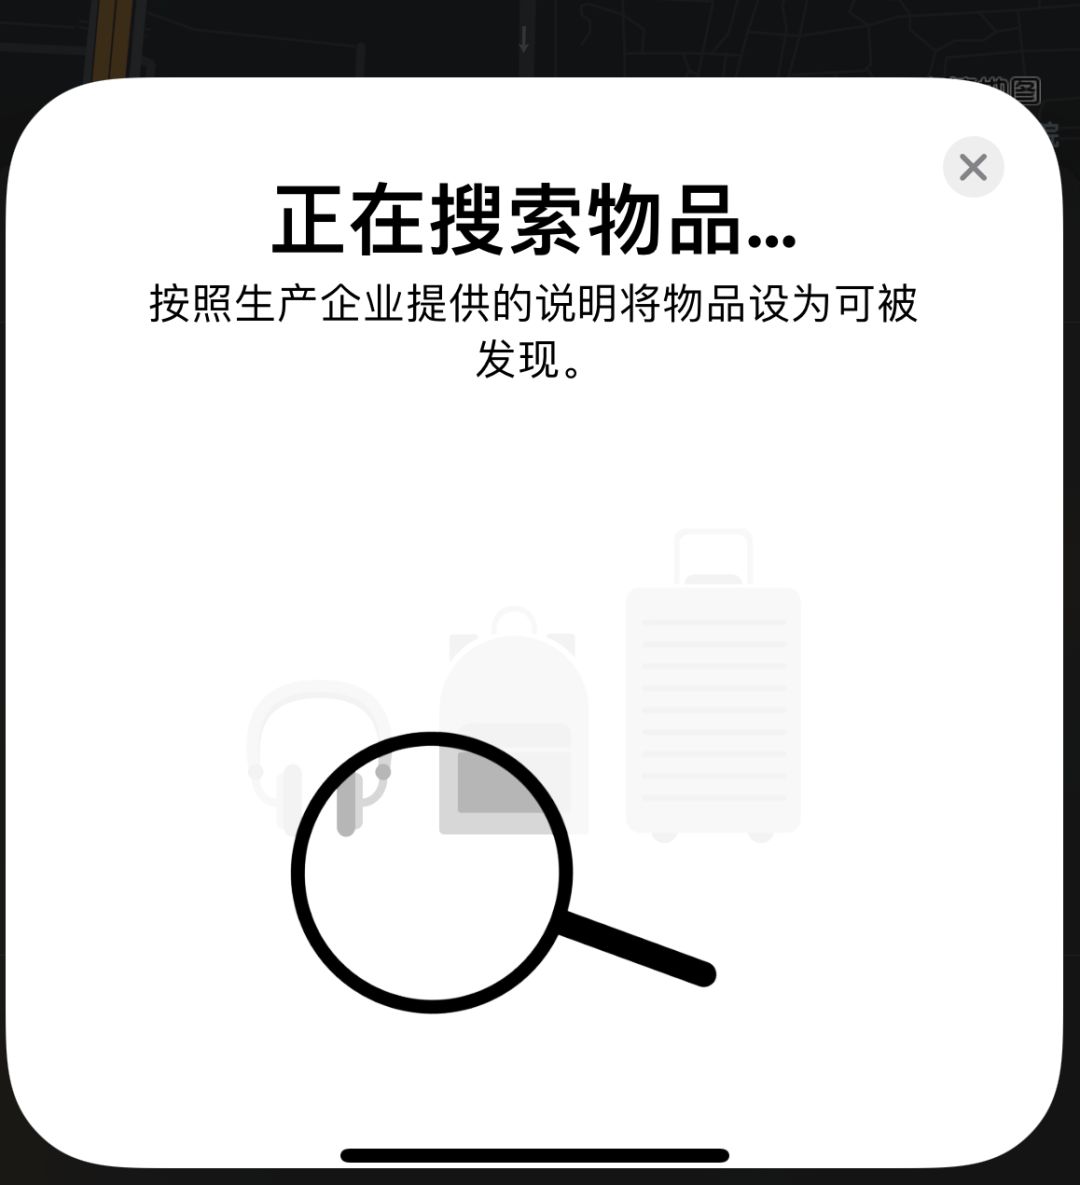 iOS 14.3 隐藏项目：可通过指令激活 “查找”应用中的寻物功能